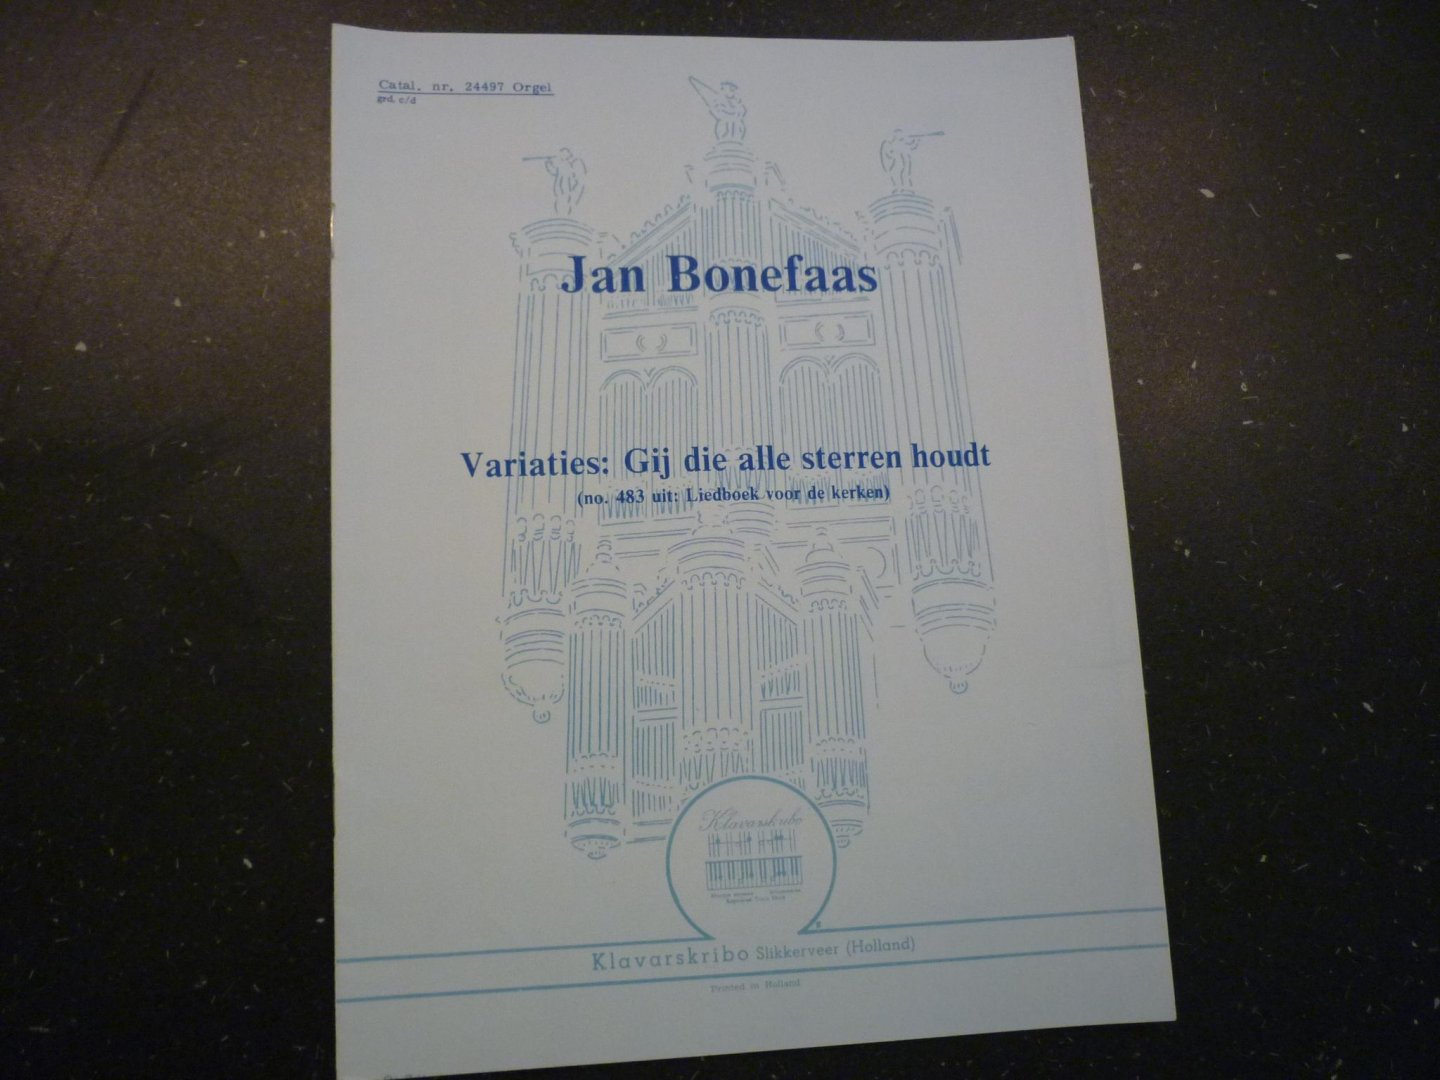 Bonefaas; Jan - Variaties: Gij die alle sterren houdt (no. 483 uit: Liedboek voor de kerken)  /  Klavarskribo